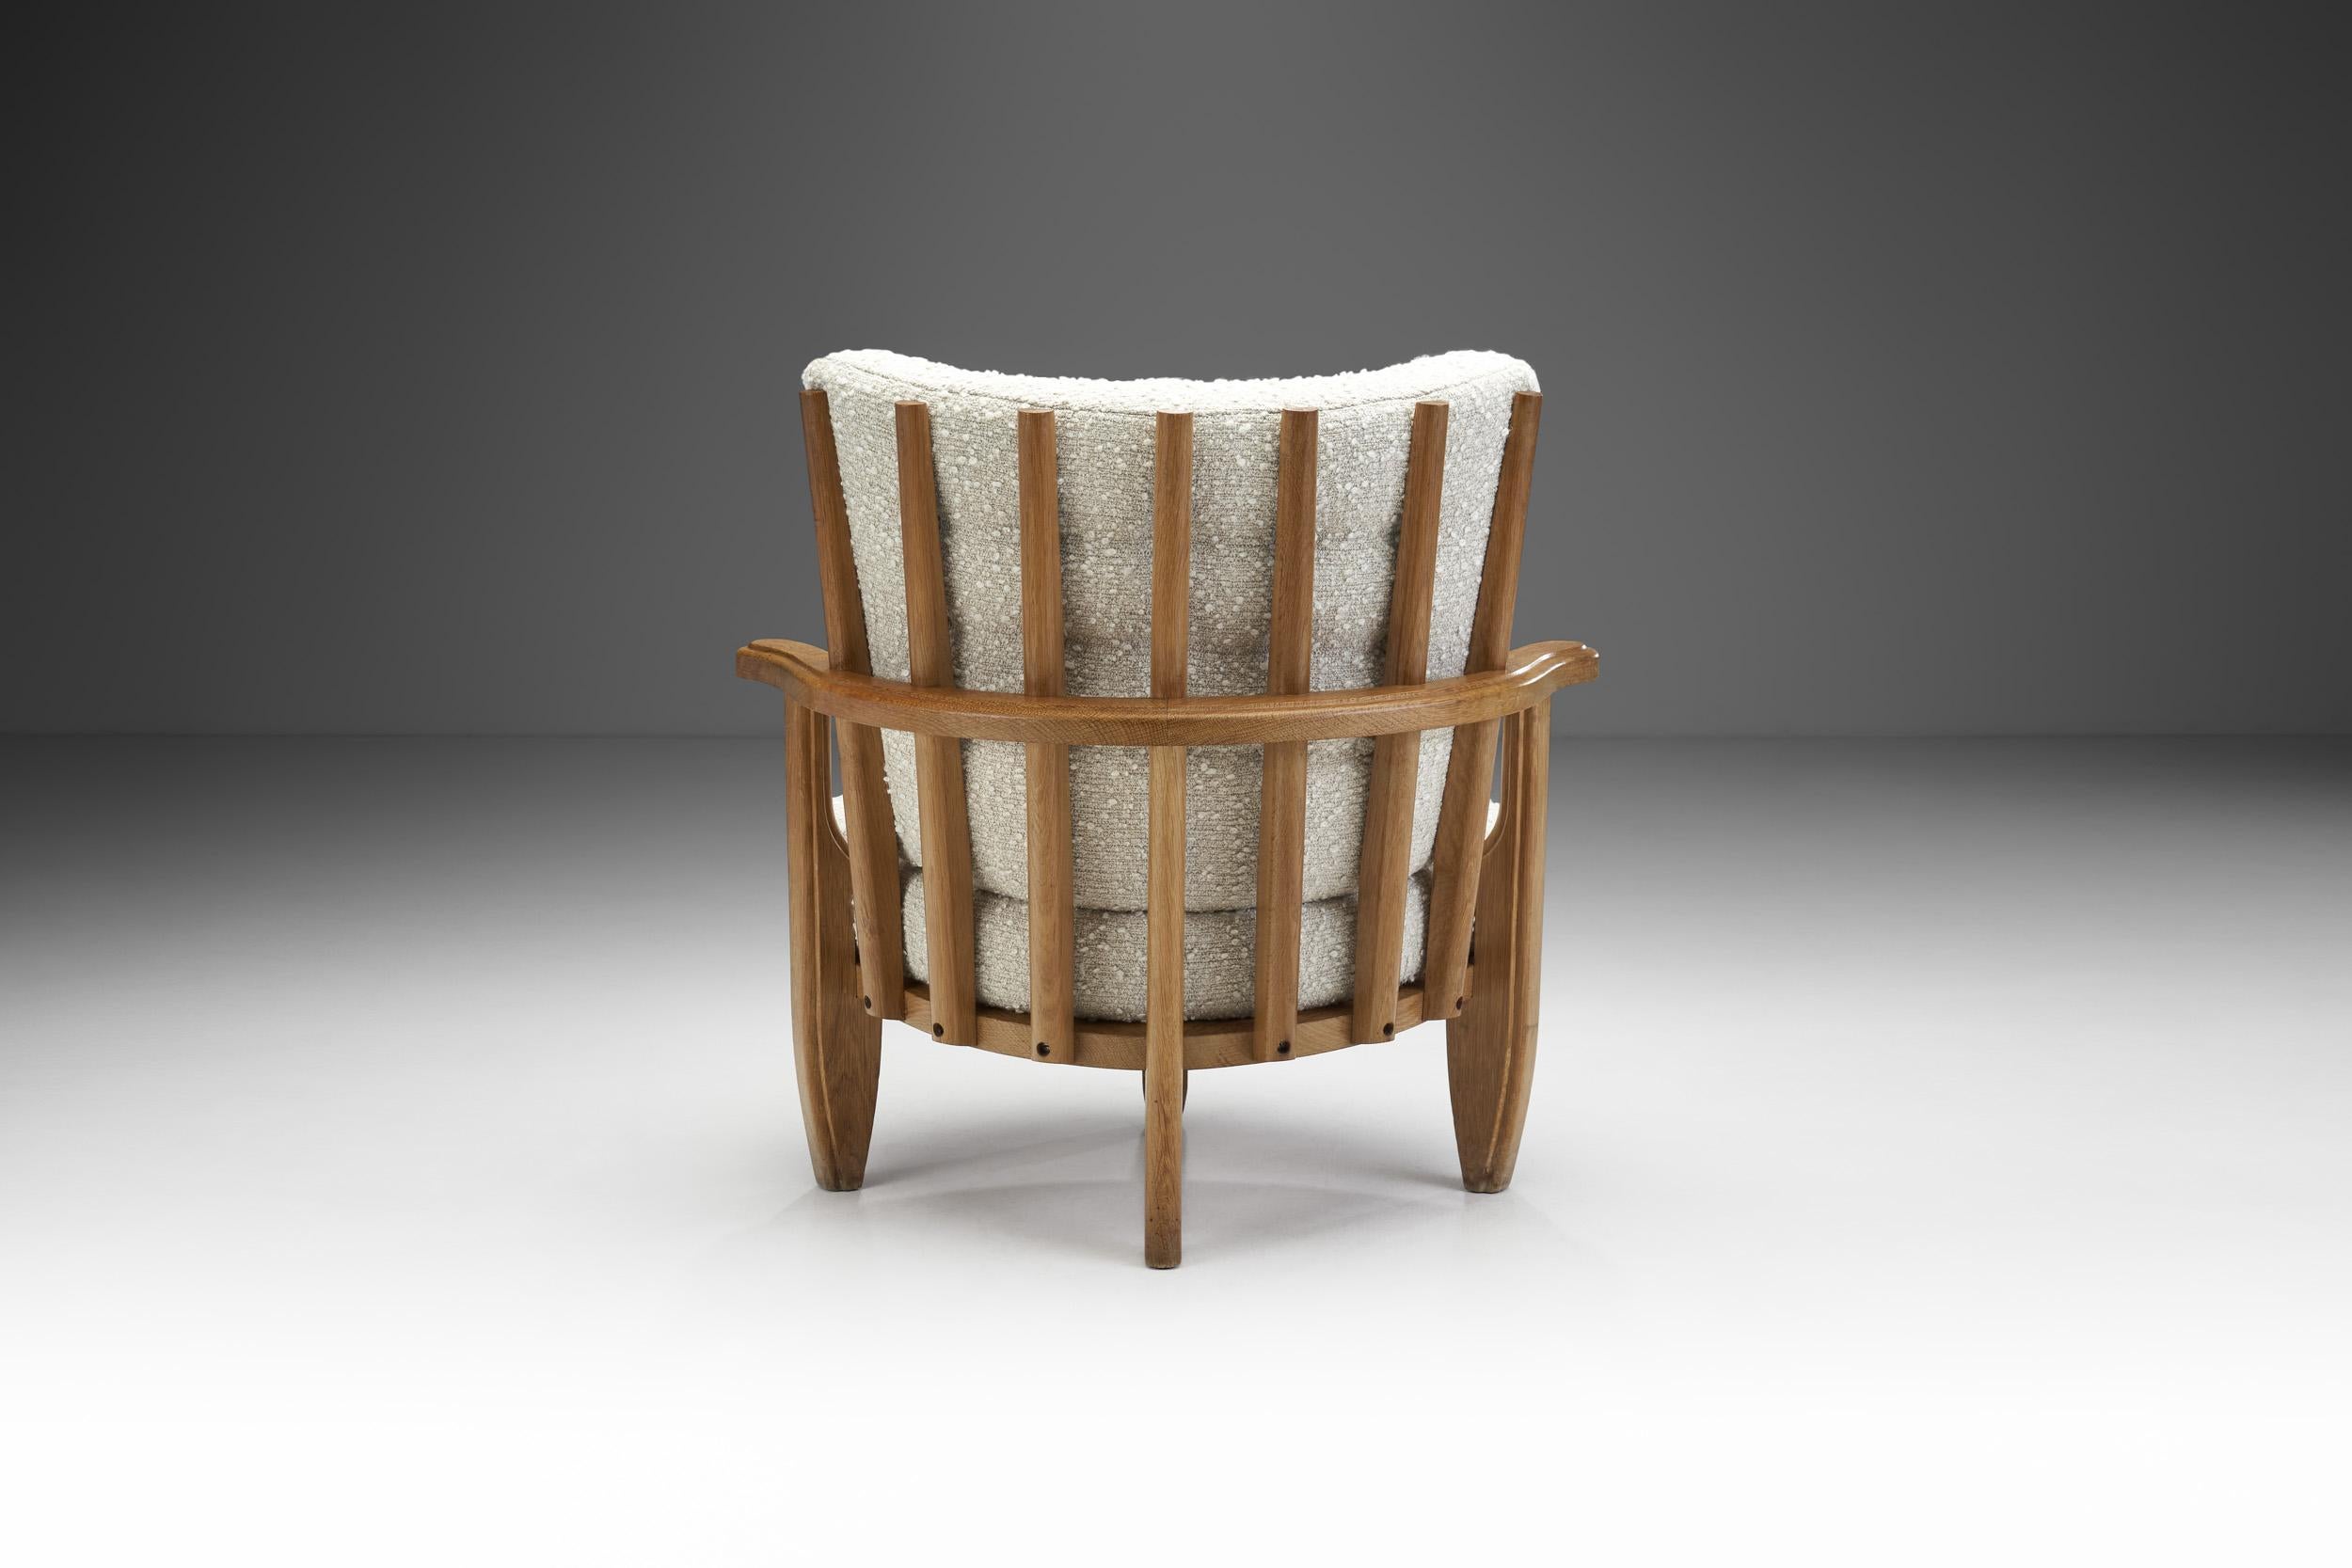 French Guillerme et Chambron Sculptural Oak Chair for Votre Maison, France, 1950s